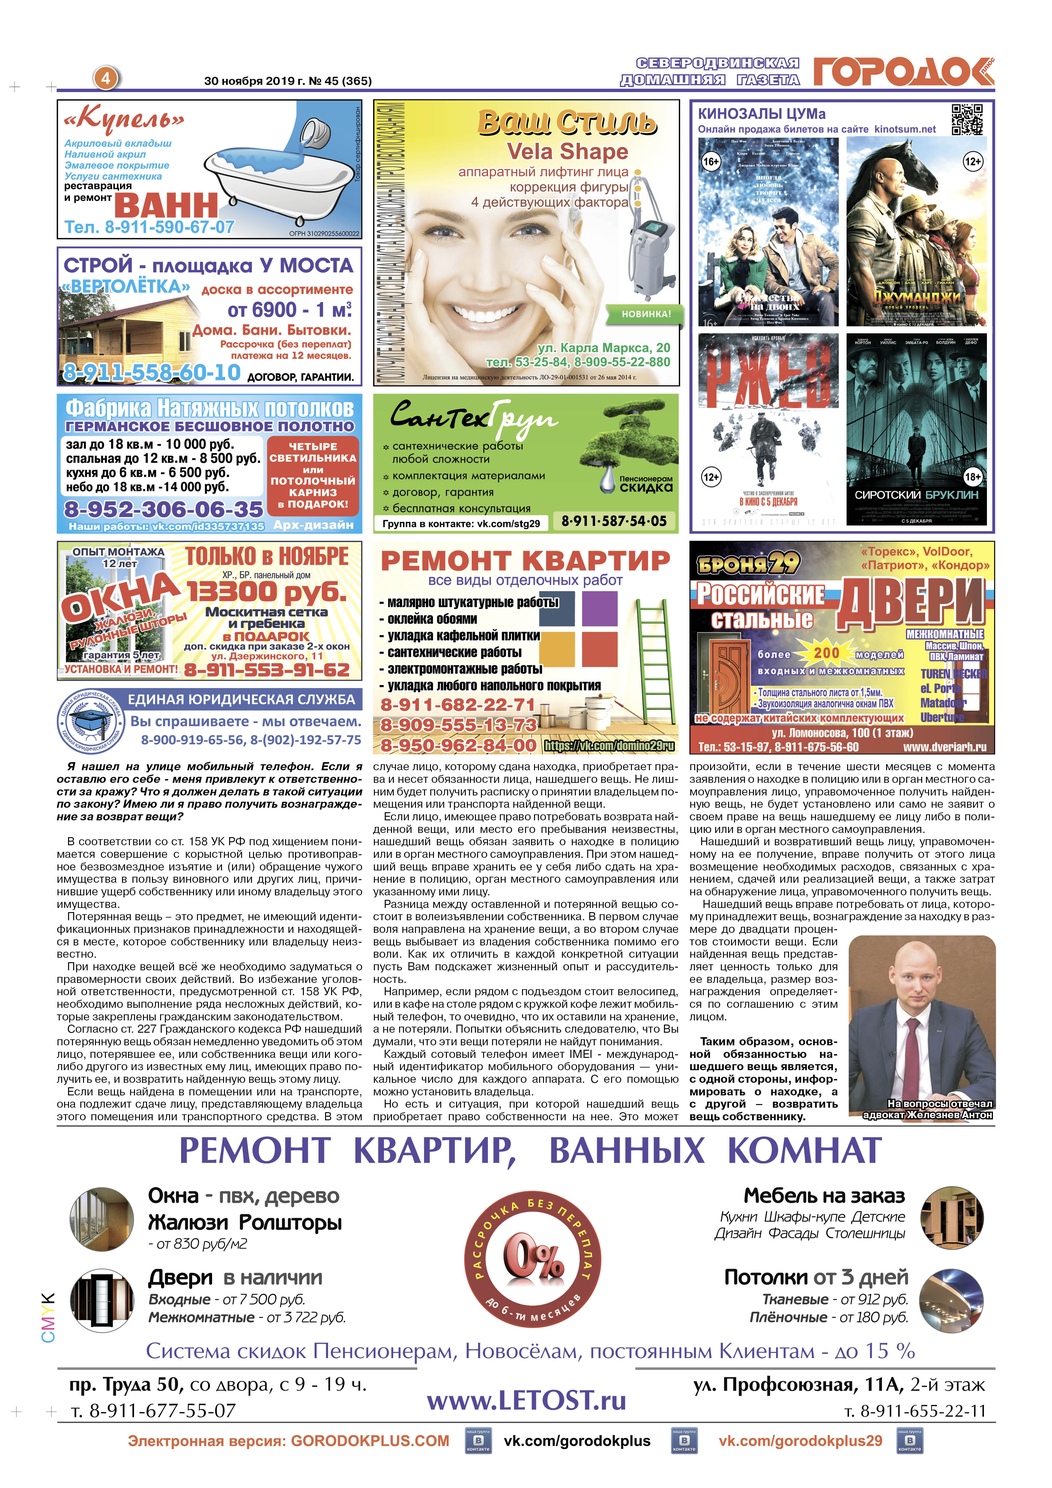 Городок плюс, выпуск номер 45 от 30 ноября 2019 года, страница 4.